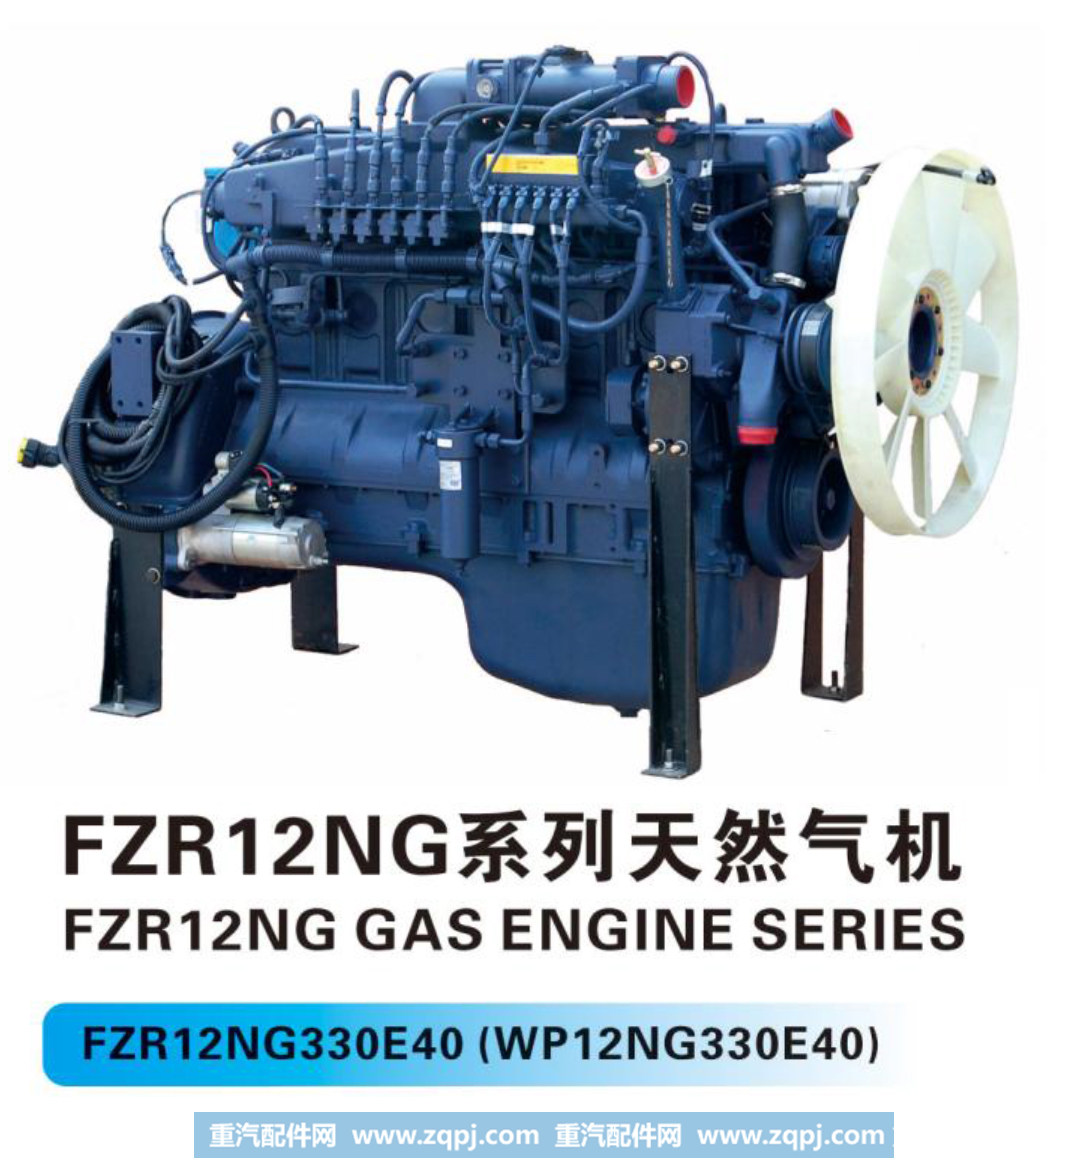 车机系列-12NG系列天然气机【法泽尔发动机】/FZR12NG330E40(WP12NG330E40)